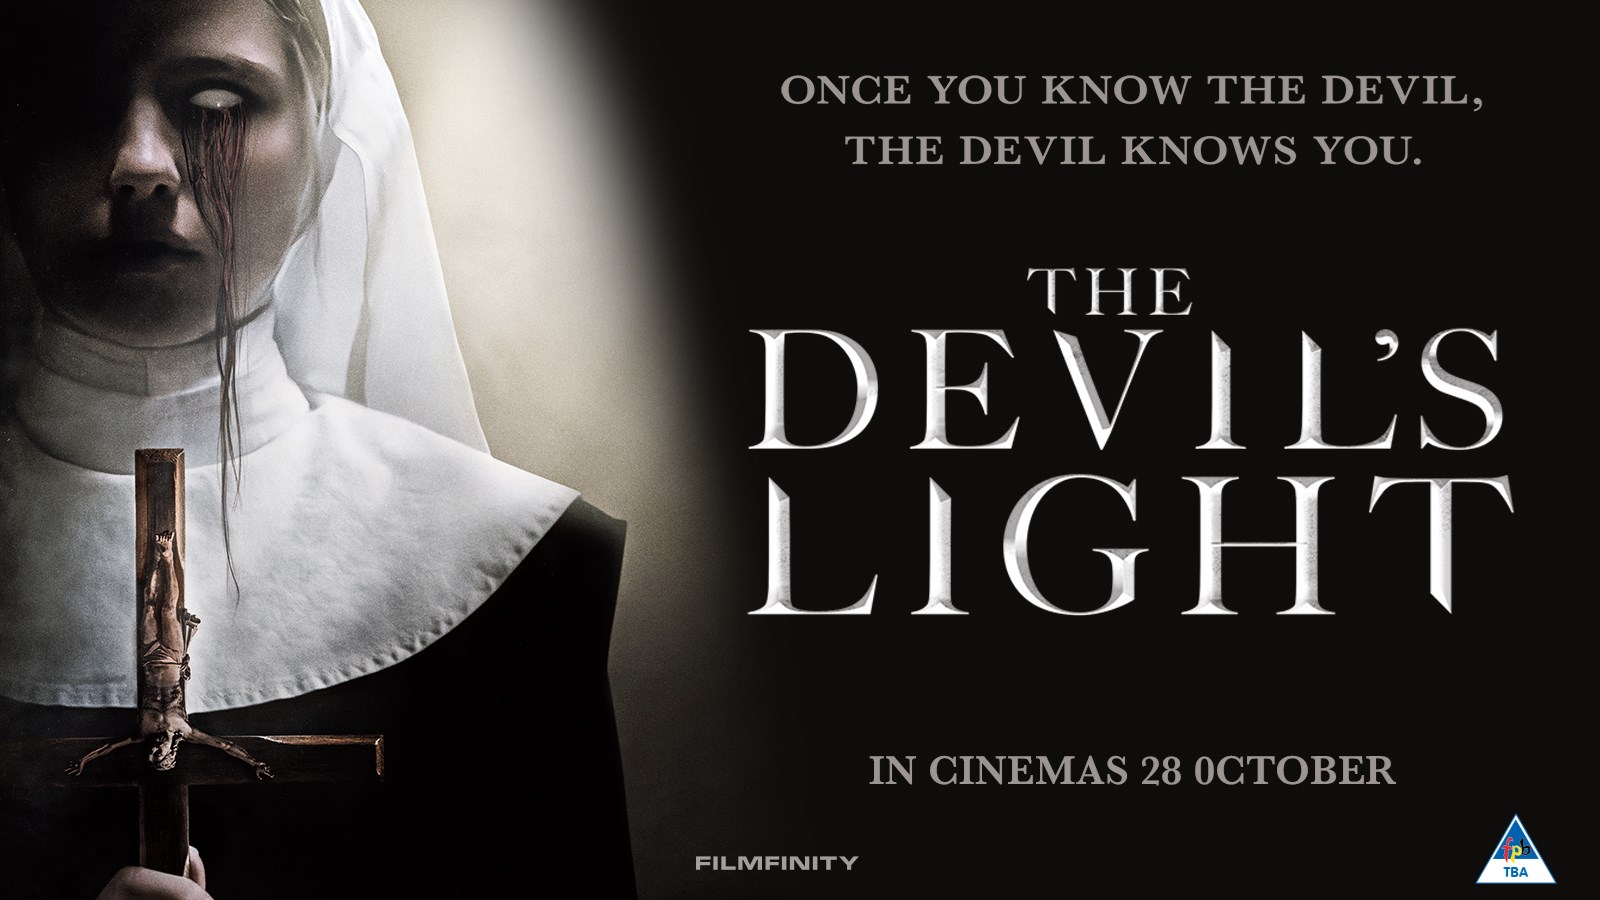 DEVIL'S LIGHT